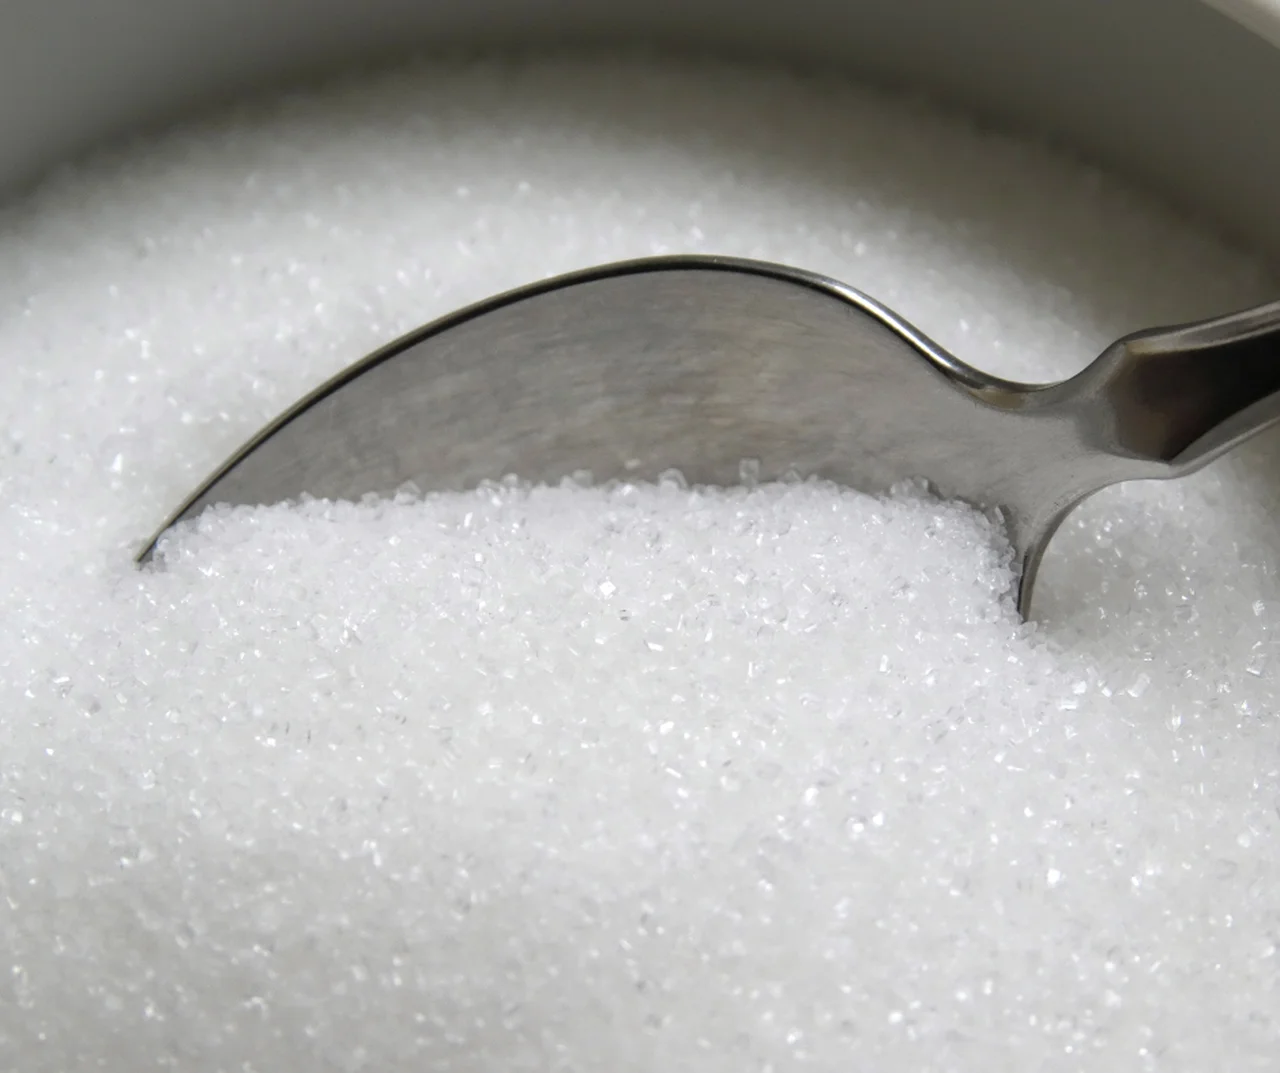 Deficyt cukru na sklepowych półkach! Czy są powody do obaw?